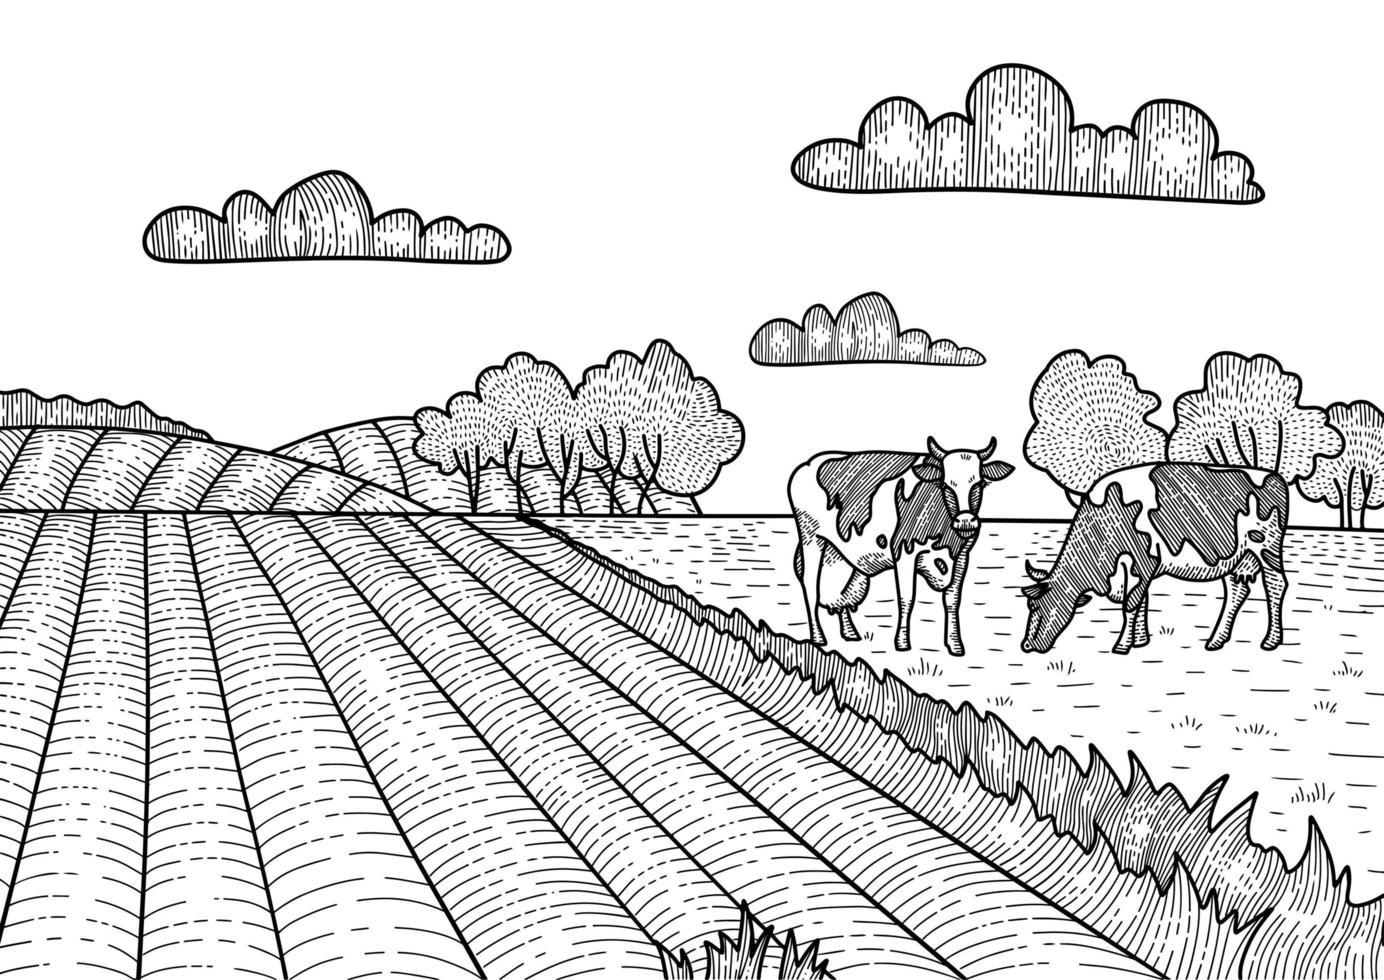 koeien grazen op de weide. dorp, landschapsboerderij. hand getrokken lineaire schets illustratie. vector